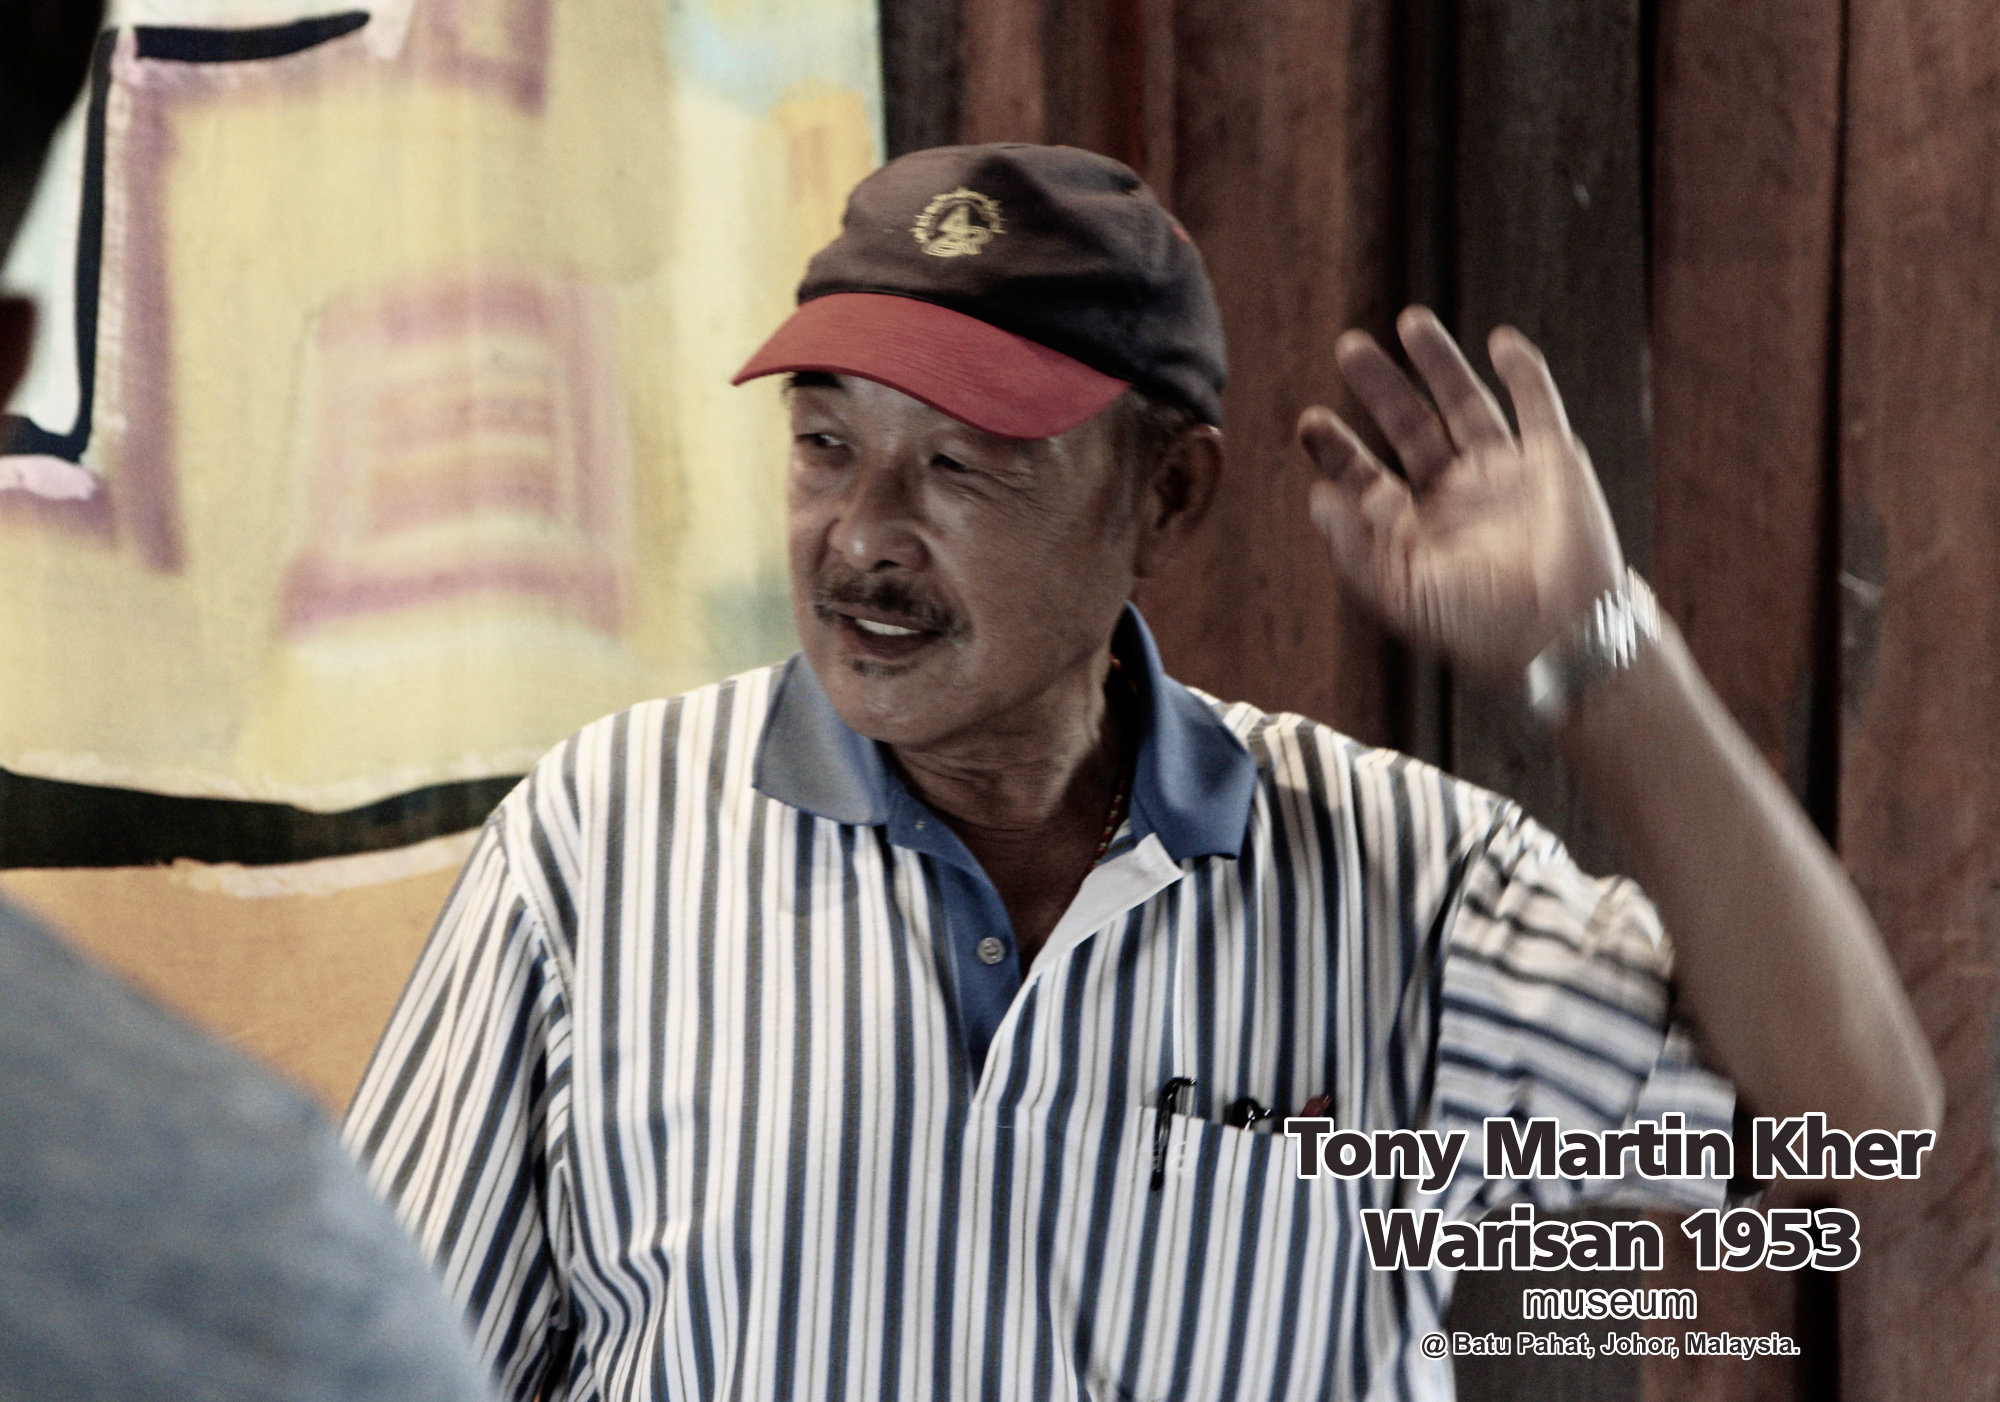 Tony Martin Kher founder of Warisan 1953 Museum at Batu Pahat Johor Malaysia Heritage 1953 Artist Joey Kher A15